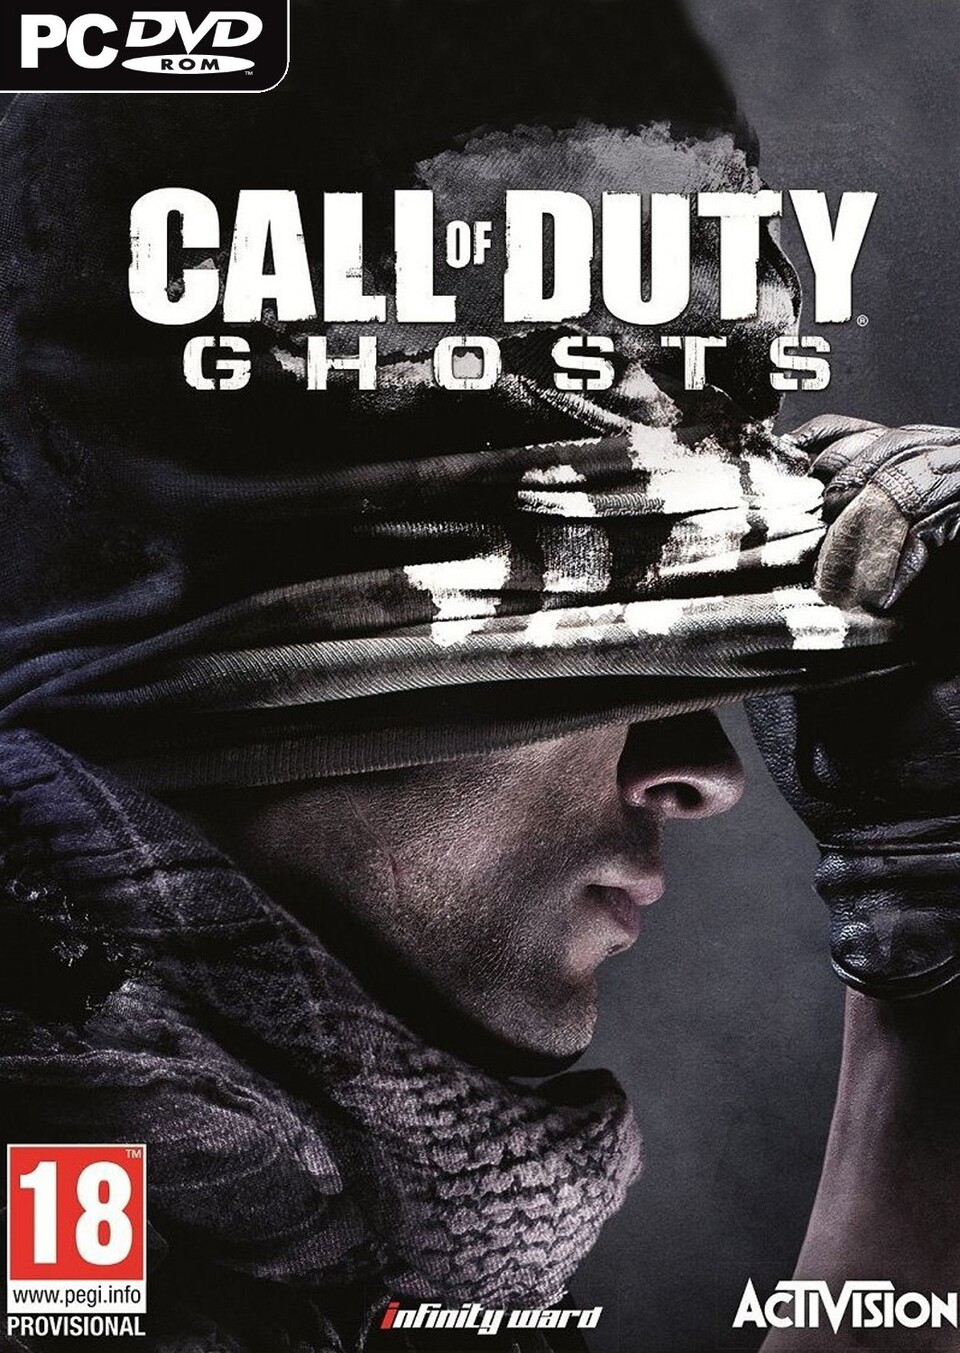 Call of Duty: Ghosts erscheint am 5. November 2013.